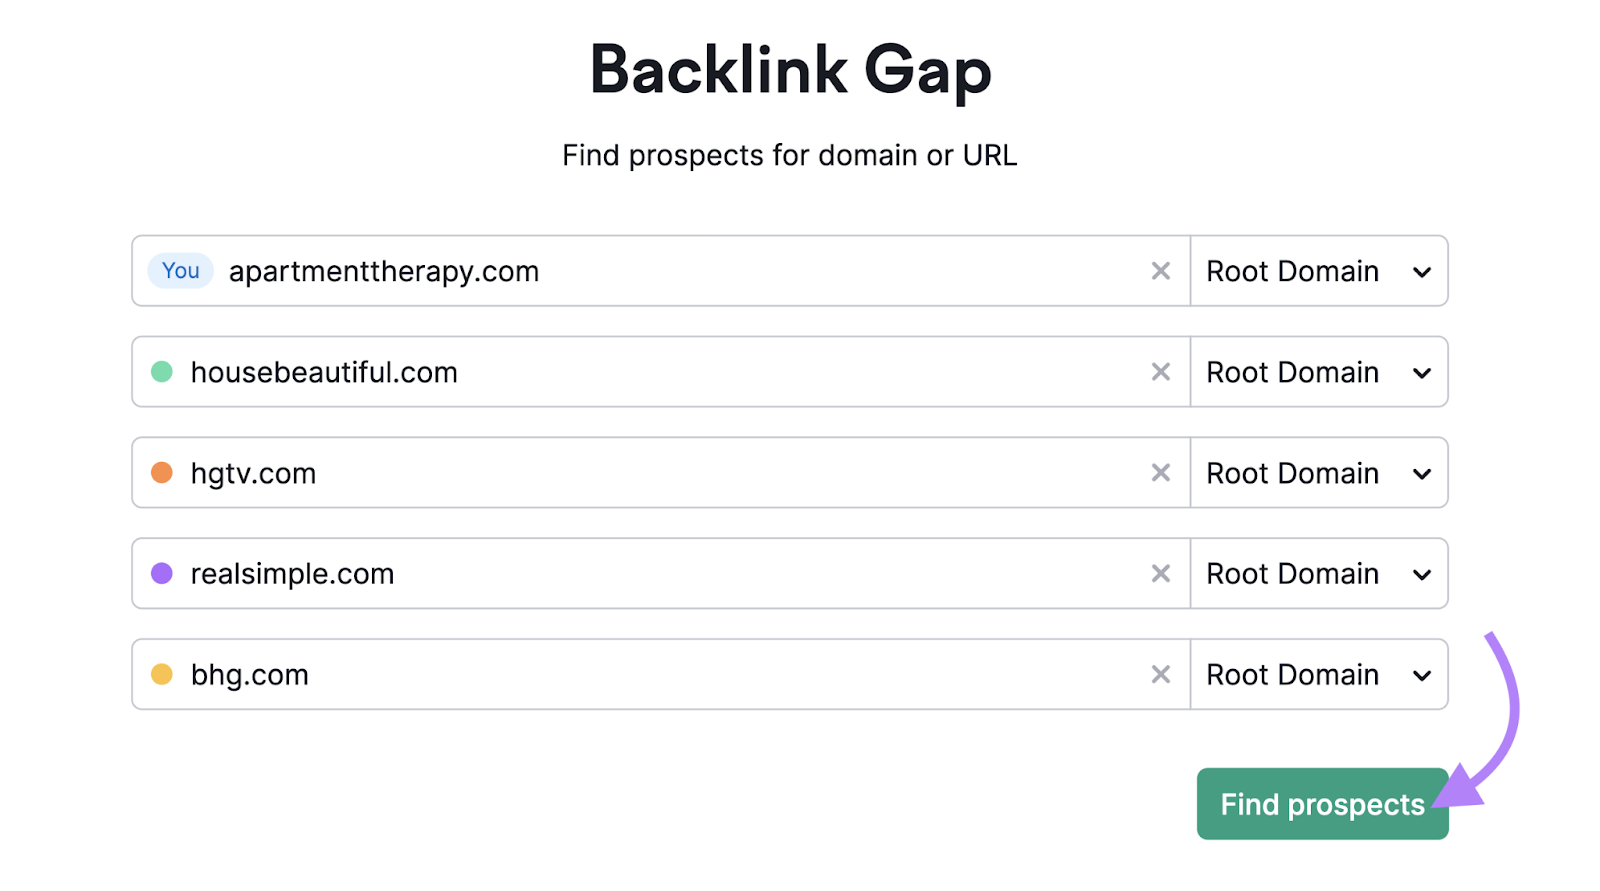 "apartmenttherapy.com" "housebeautiful.com" "hgtv.com" "realsimple.com" and "bhg.com" domains entered into the Backlink Gap tool search bar